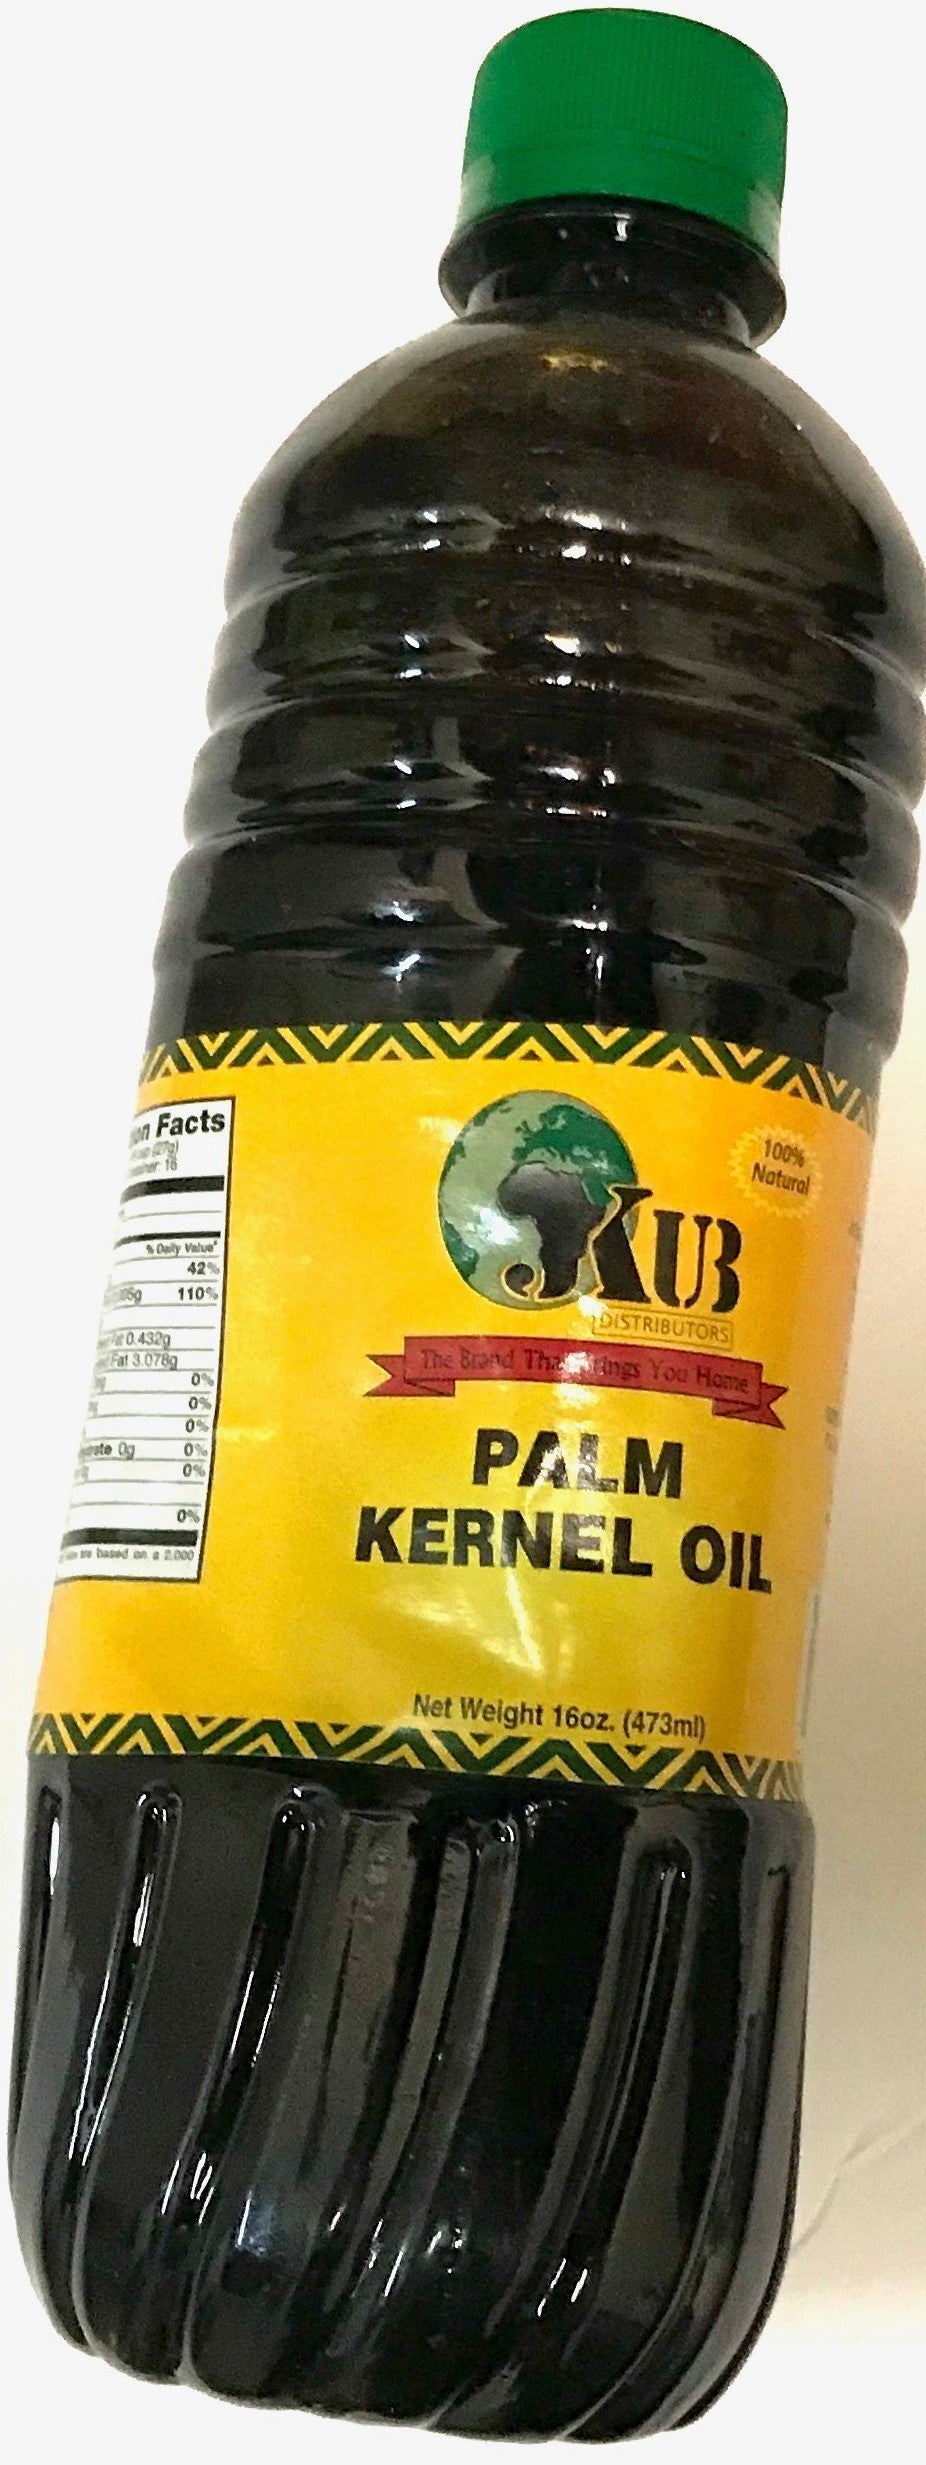 Jkub Palm Kernel Oil, 16oz | AFRS200